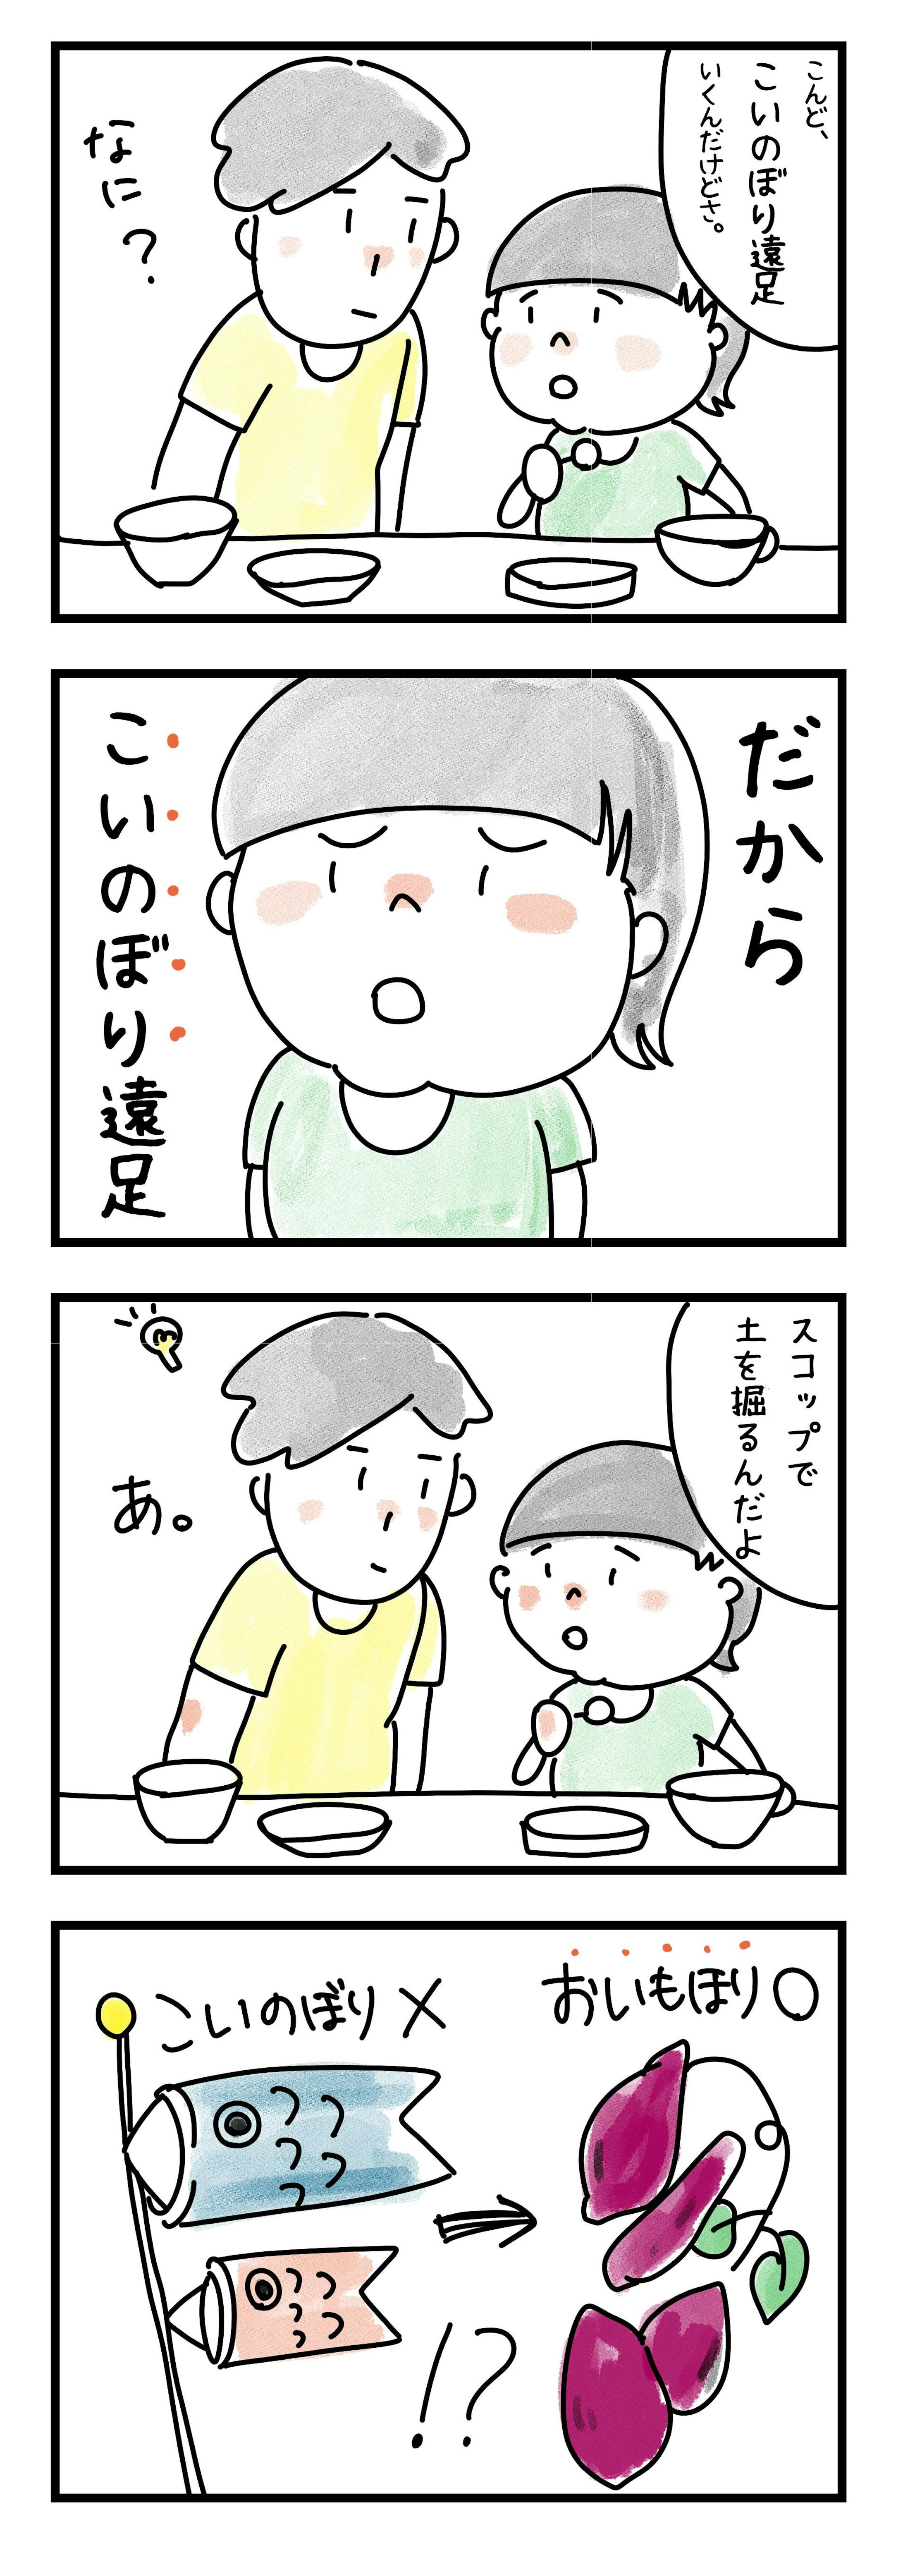 四コマ漫画-1